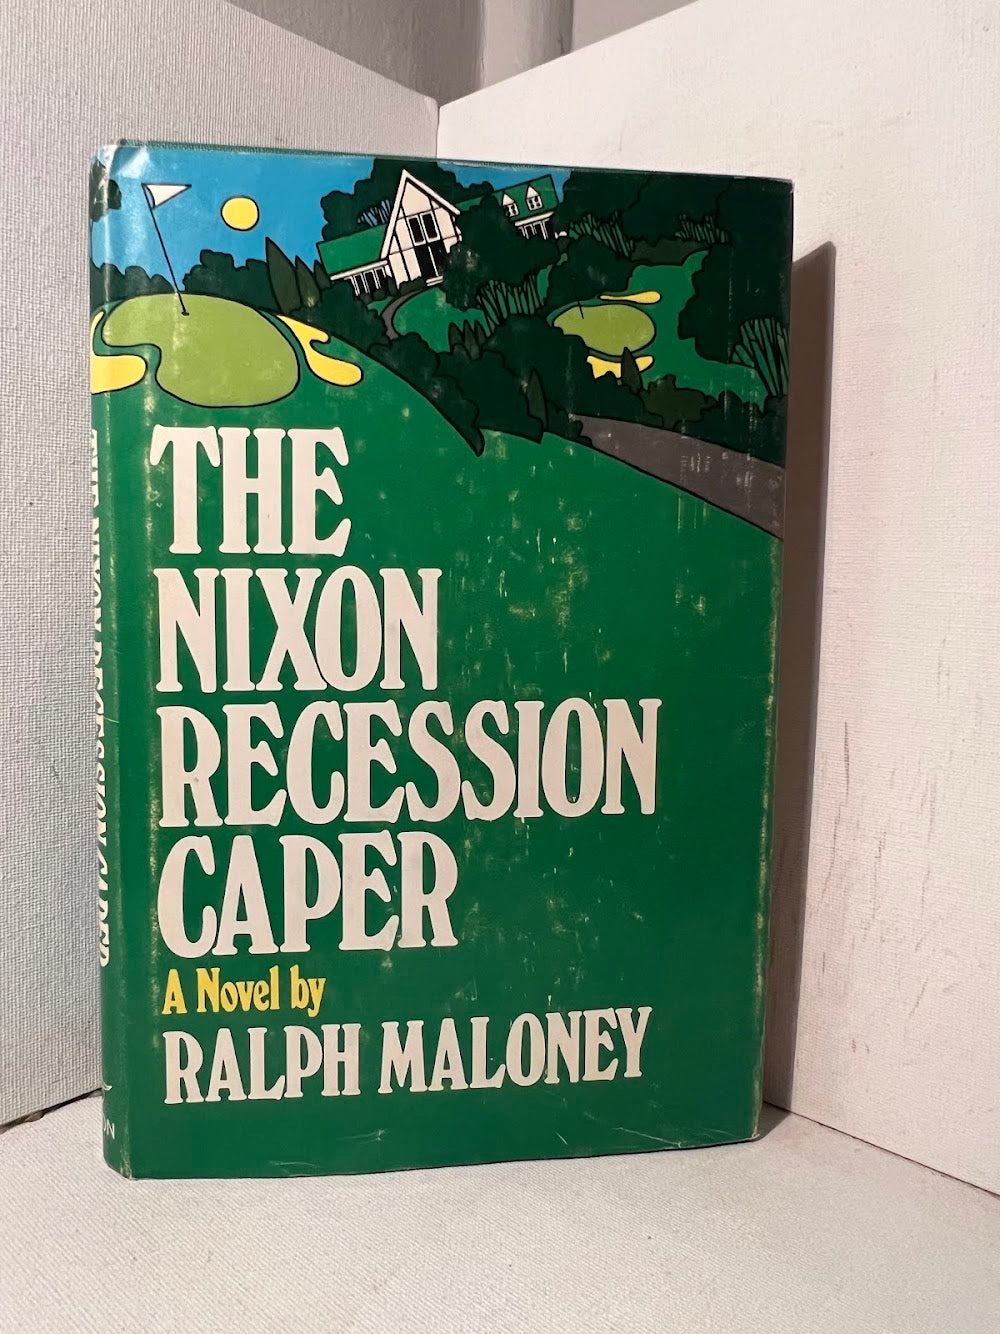 The Nixon Recession Caper by Ralph Maloney